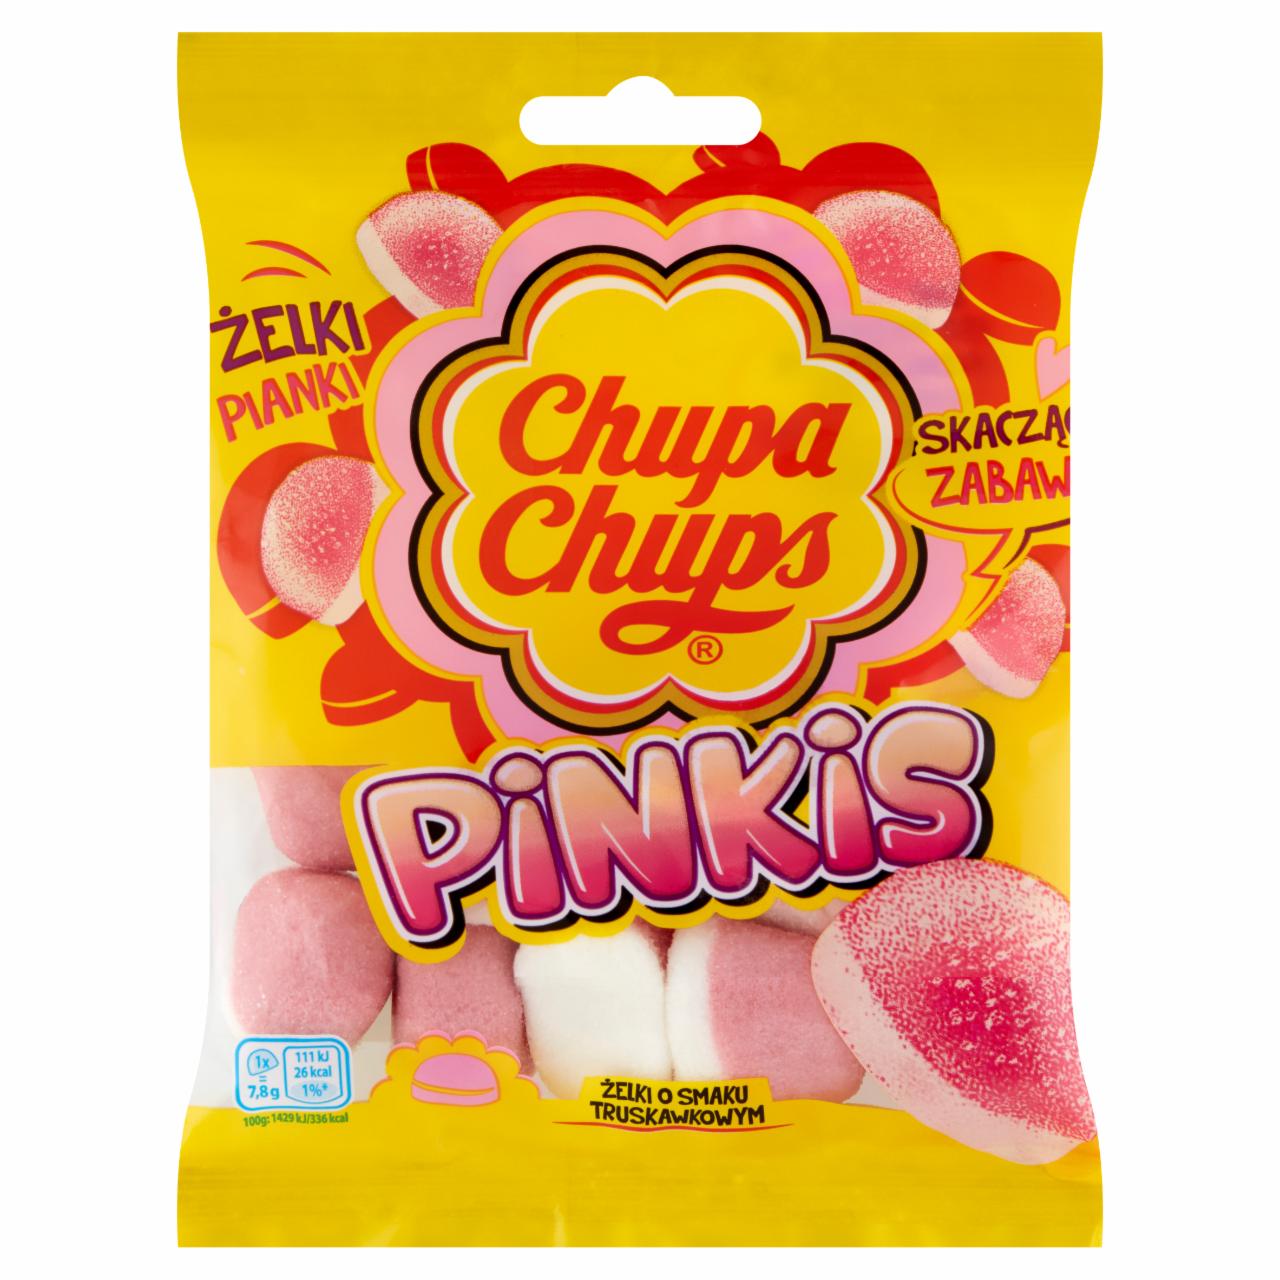 Zdjęcia - Chupa Chups Pinkis Żelki o smaku truskawkowym 90 g